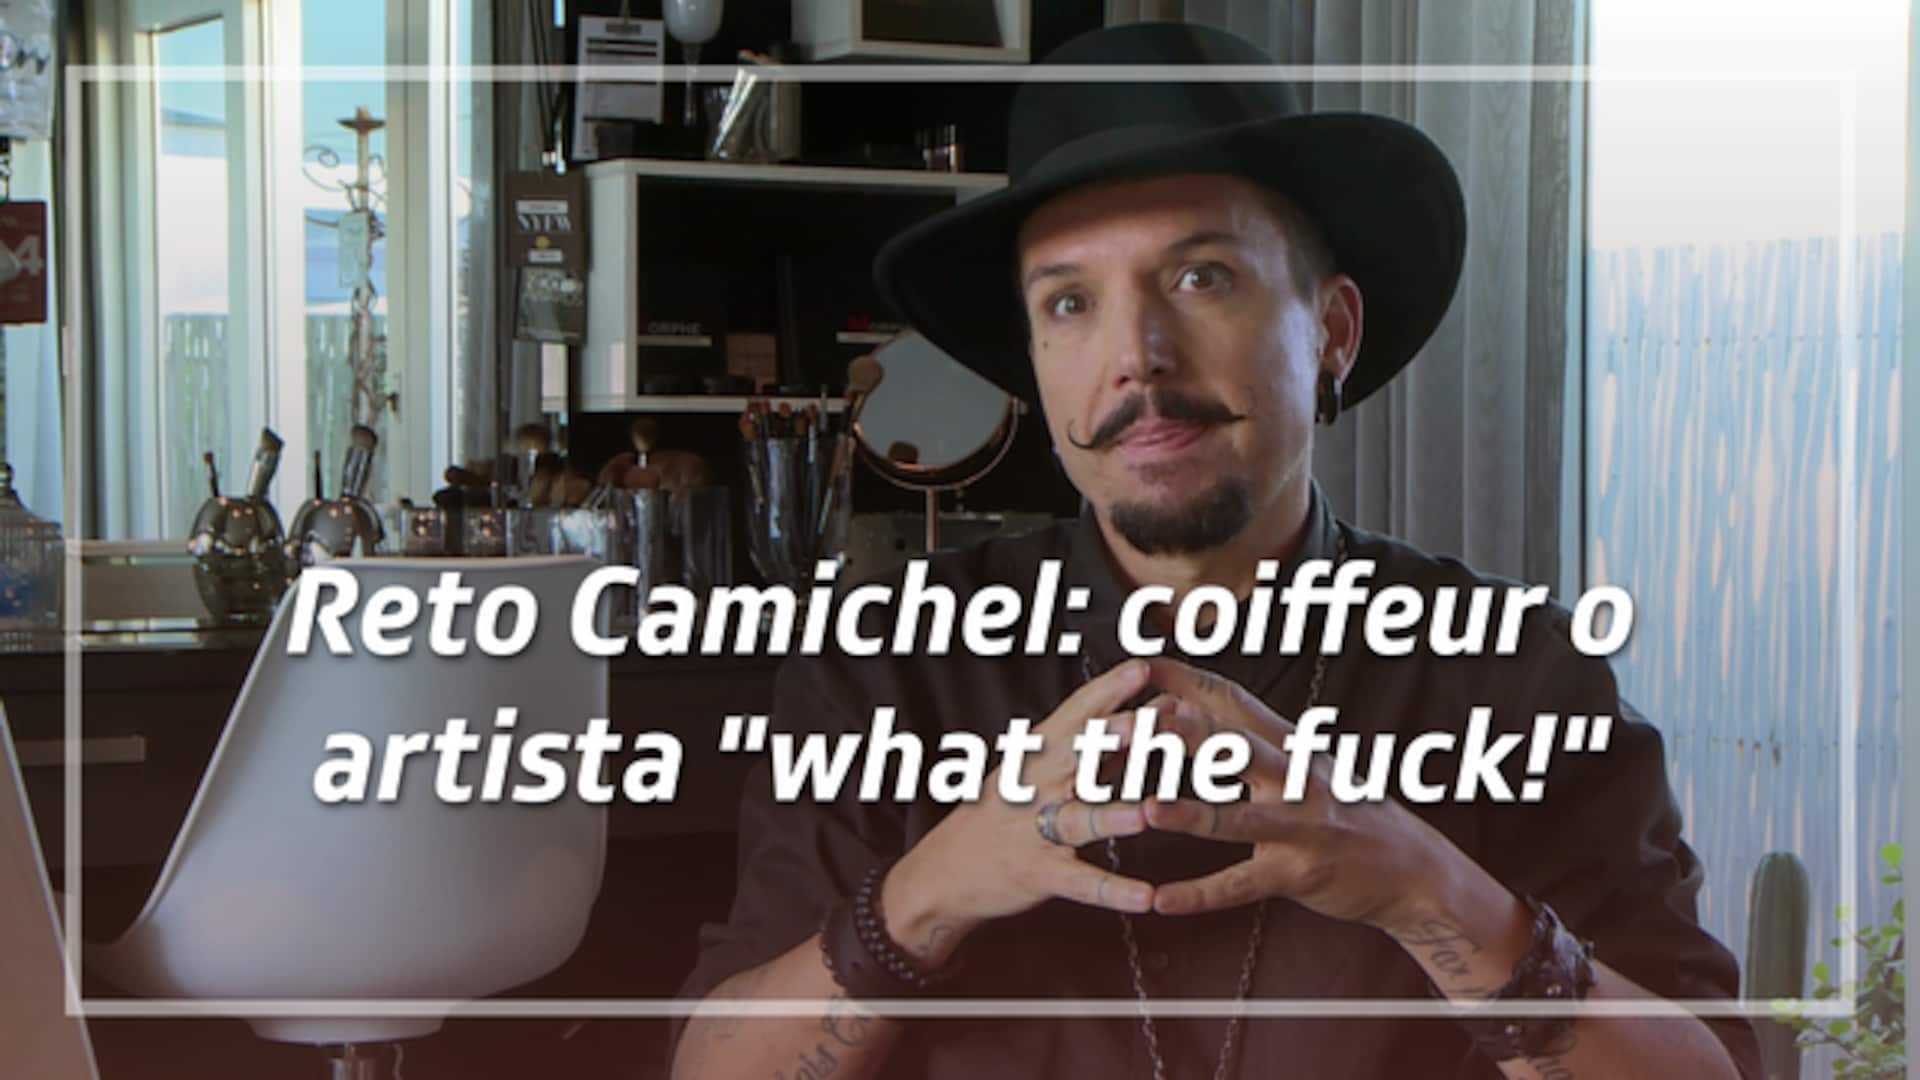 Reto Camichel: coiffeur o artista "what the fuck!"